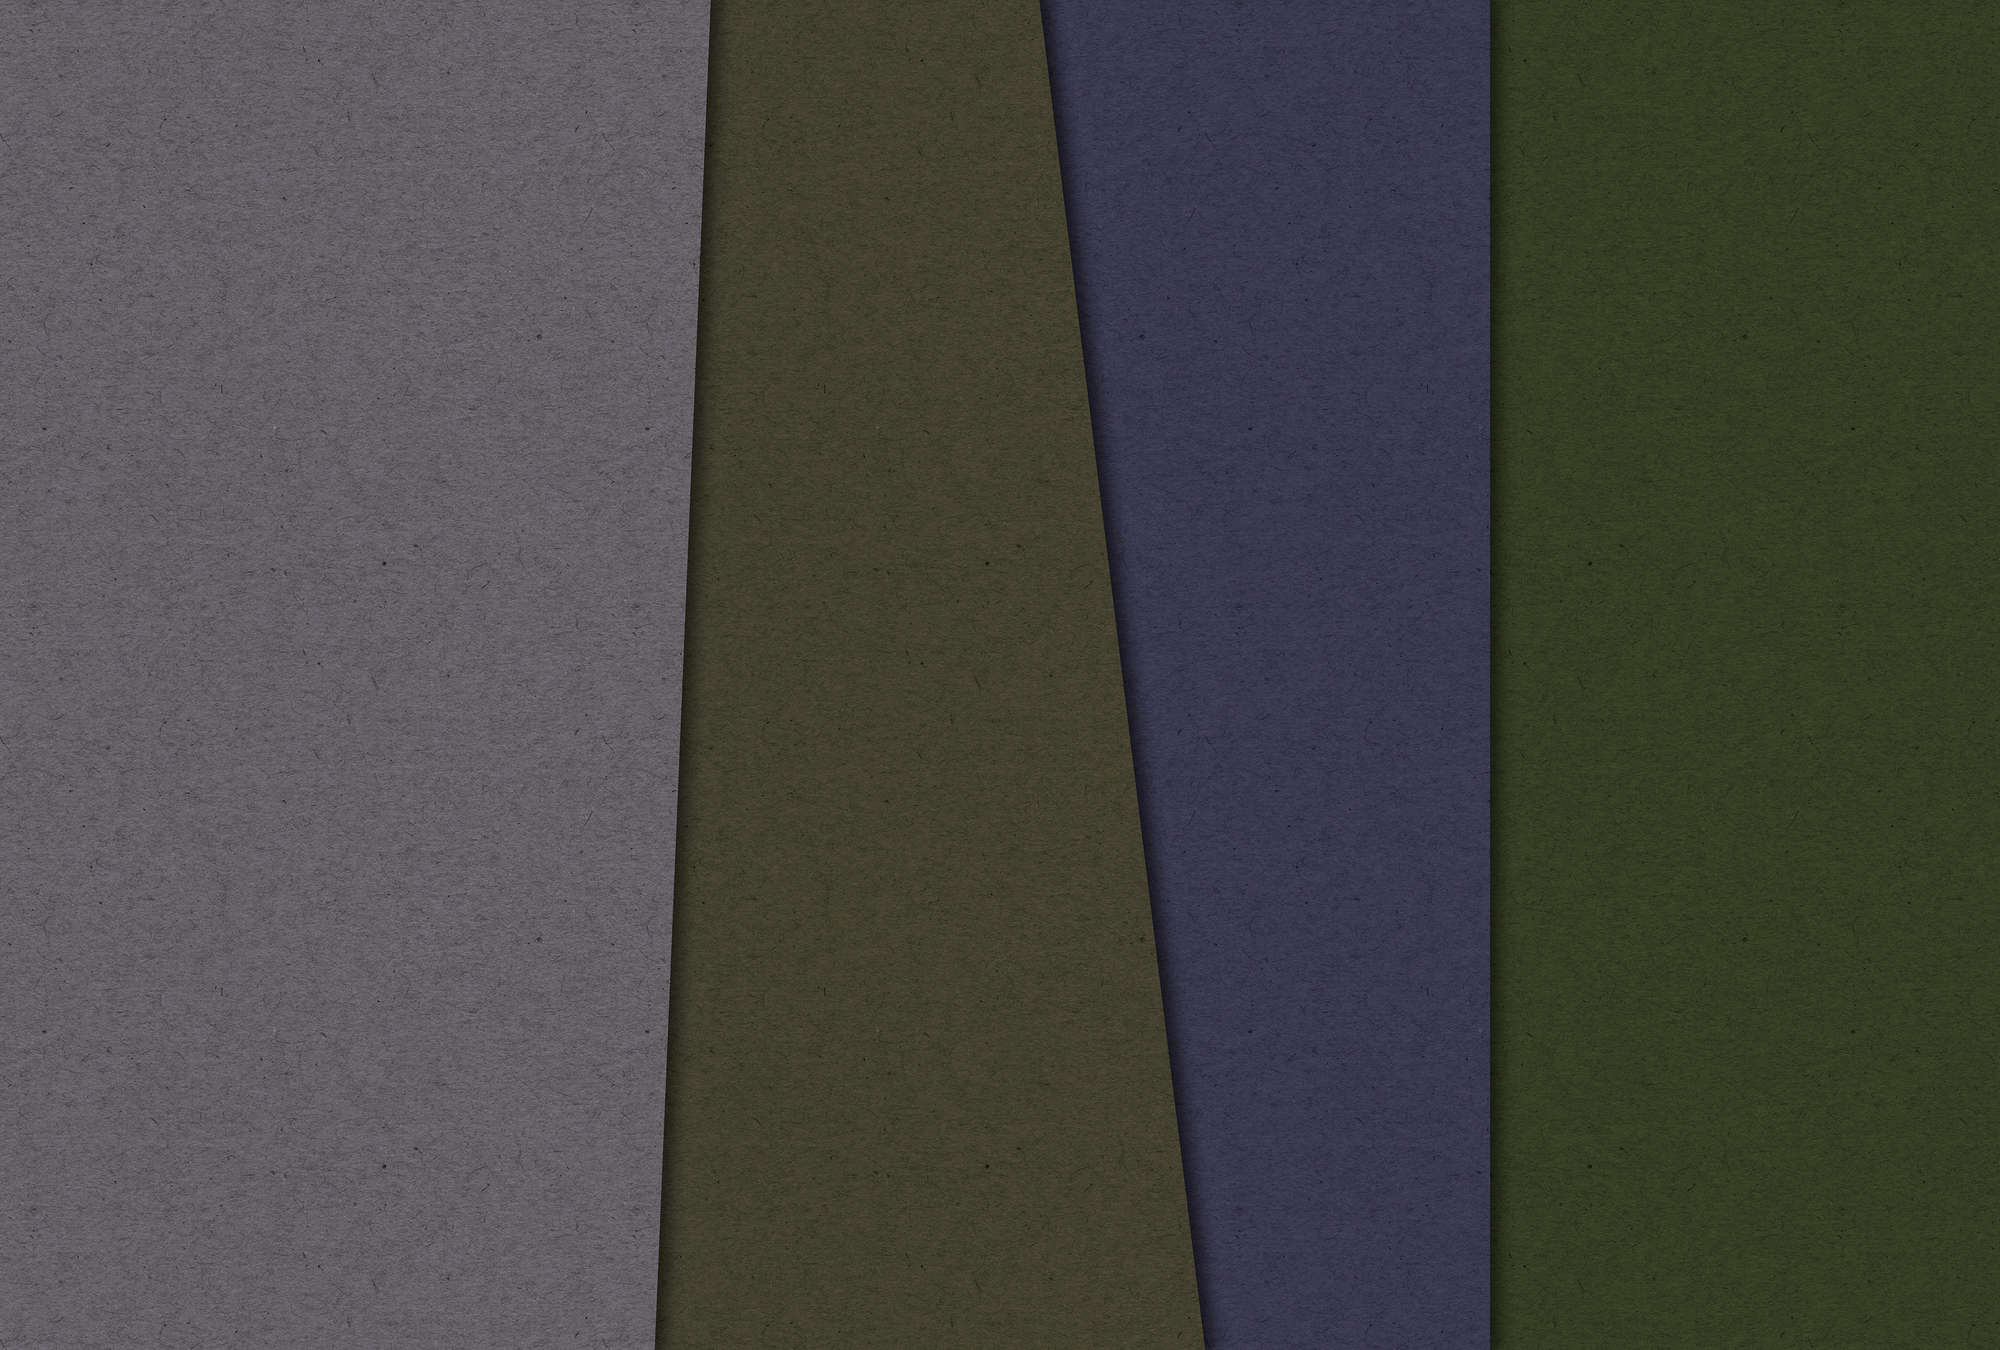             Layered Cardboard 3 - Papier peint minimaliste & abstrait- À structure de carton - Vert, Violet | Nacré intissé lisse
        